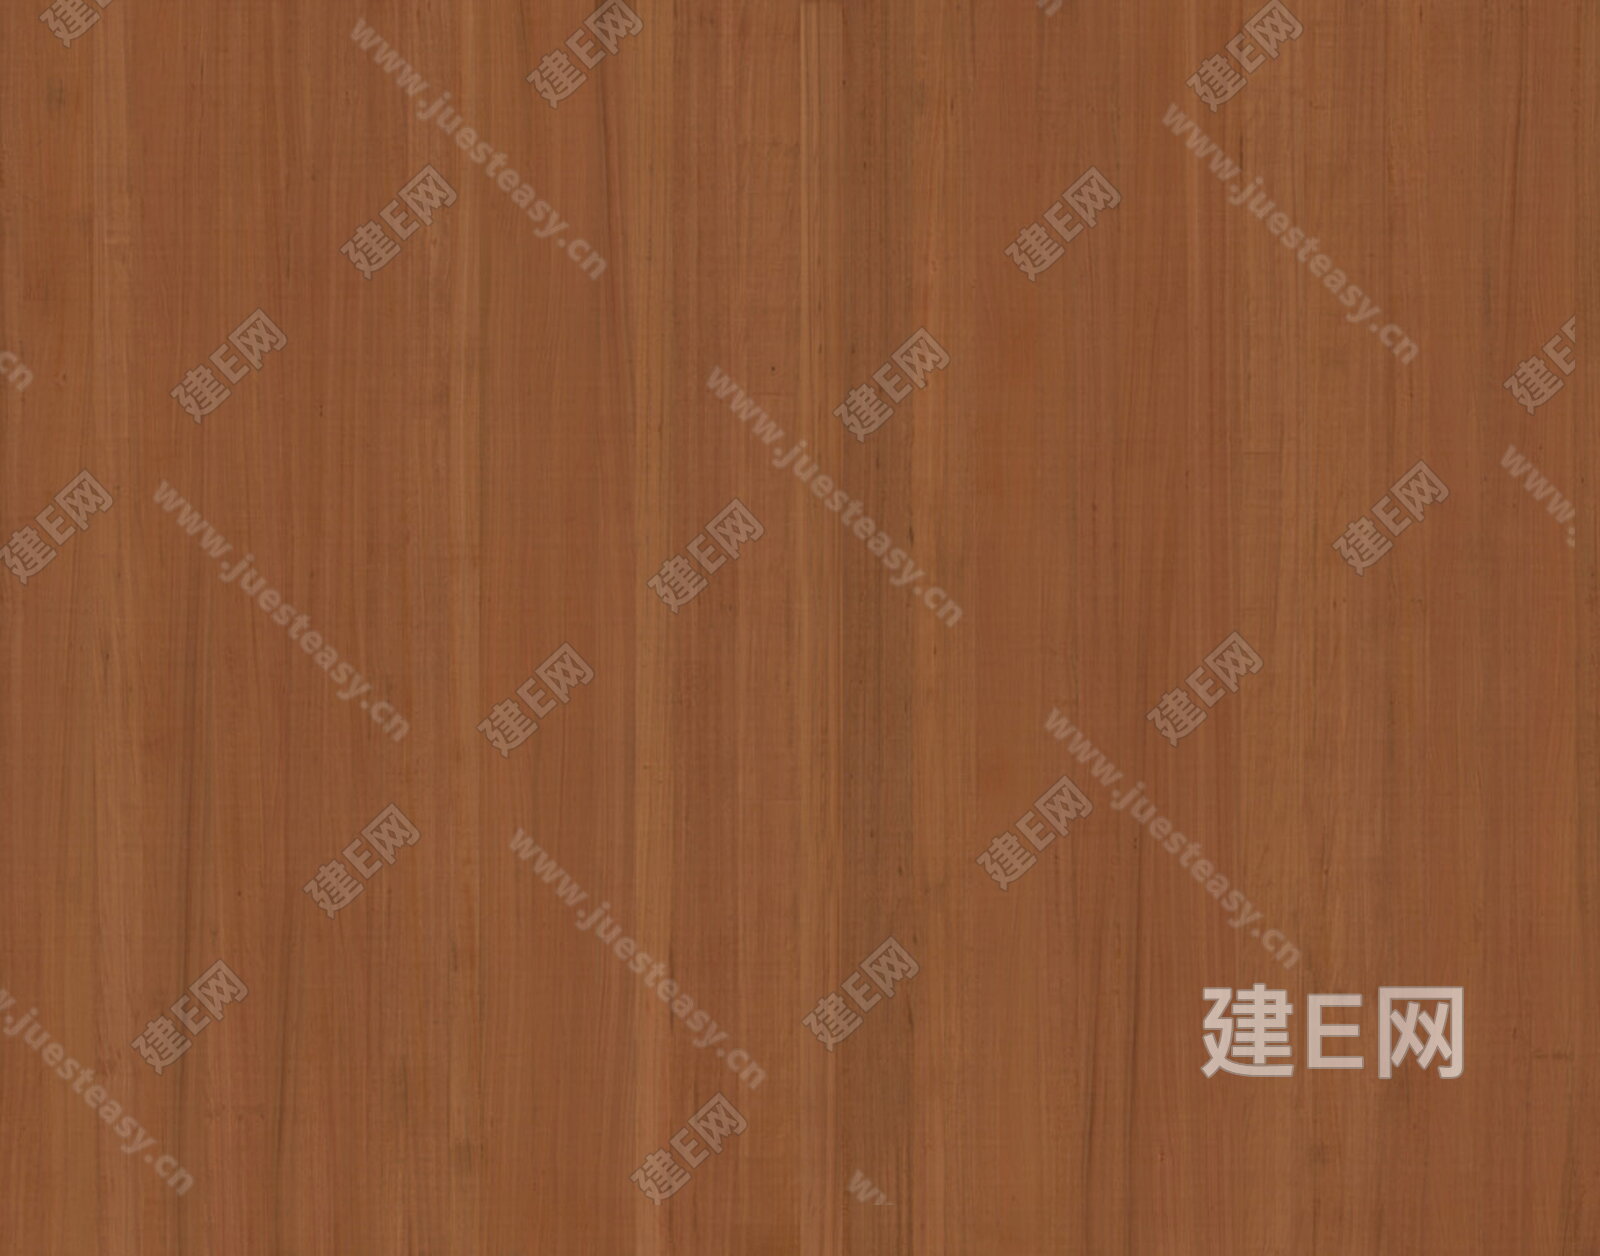 尊贵柚木 木纹 木饰面 饰面板材质贴图下载-【集简空间】「每日更新」